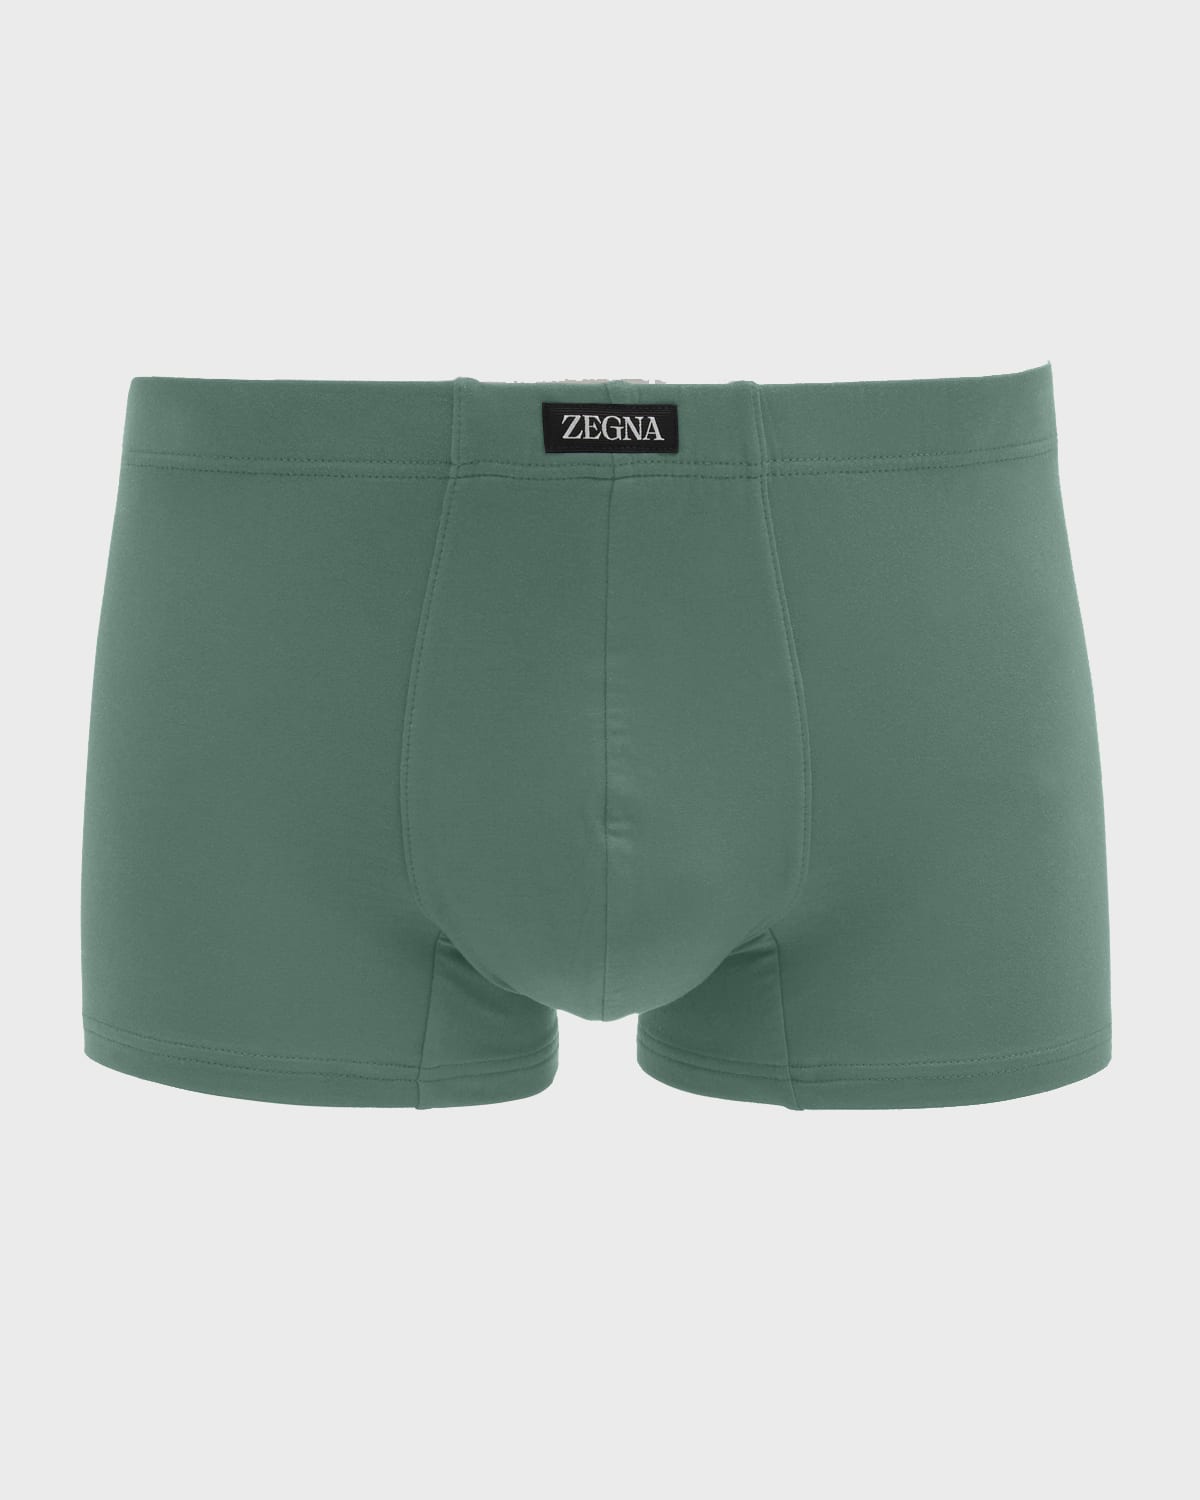 Zegna Men's Micro-modal Trunks In Green